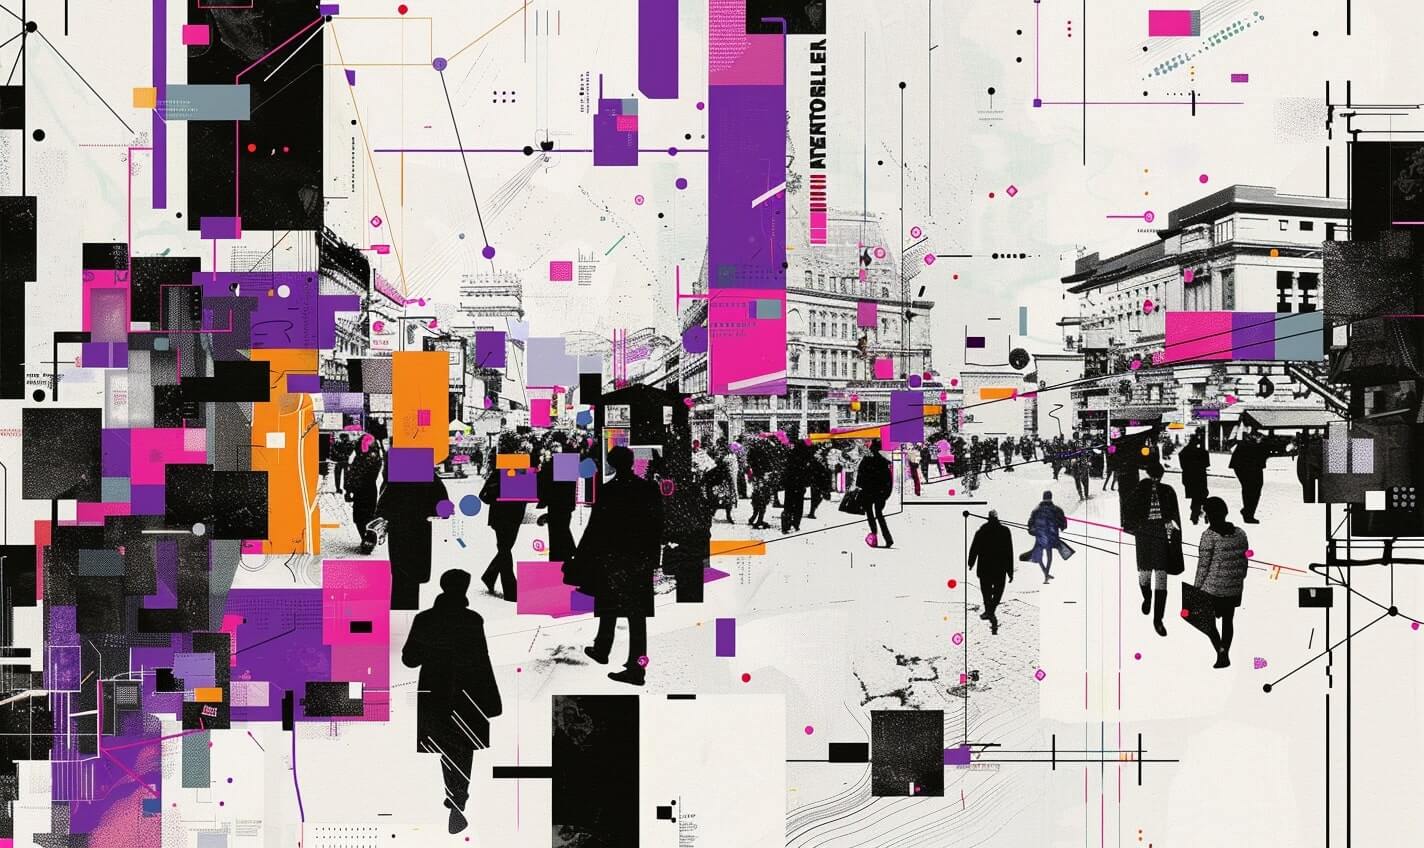 Go To Market Strategie: Abstraktes Bild, das einen Marktplatz durch viele laufende Leute in einer Stadt darstellt